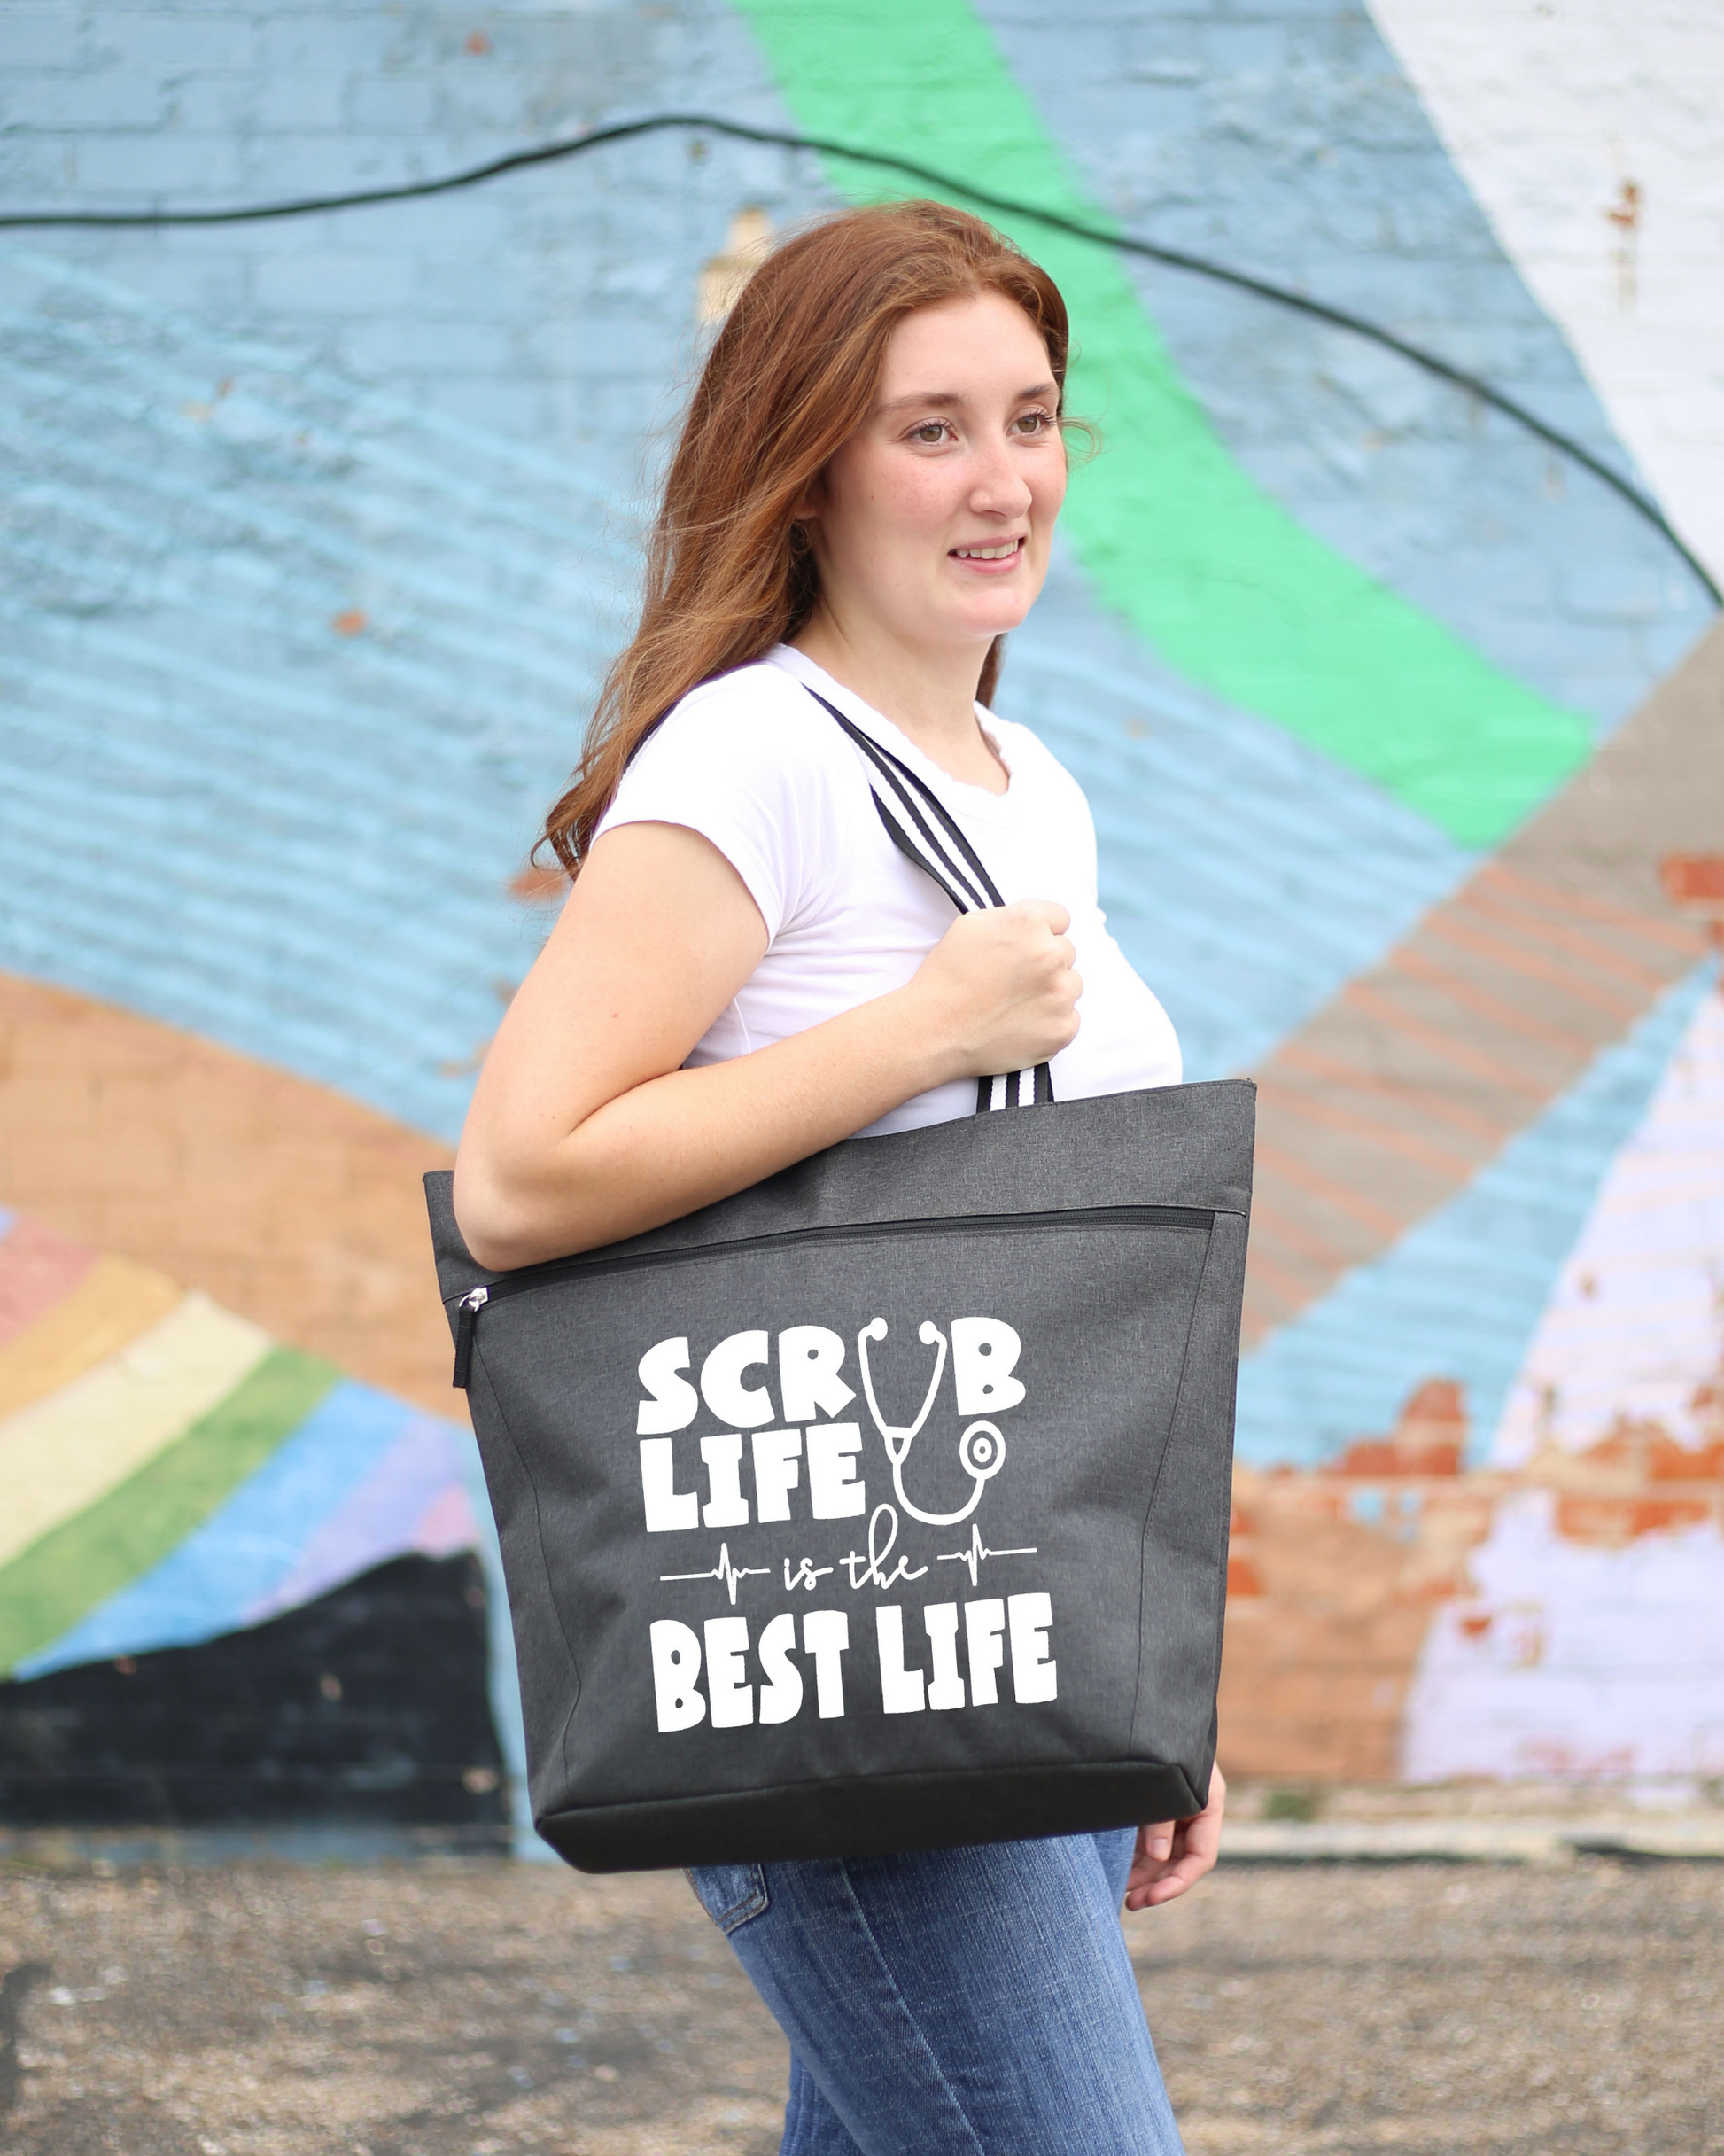 The Bag For Life Shopping Bag